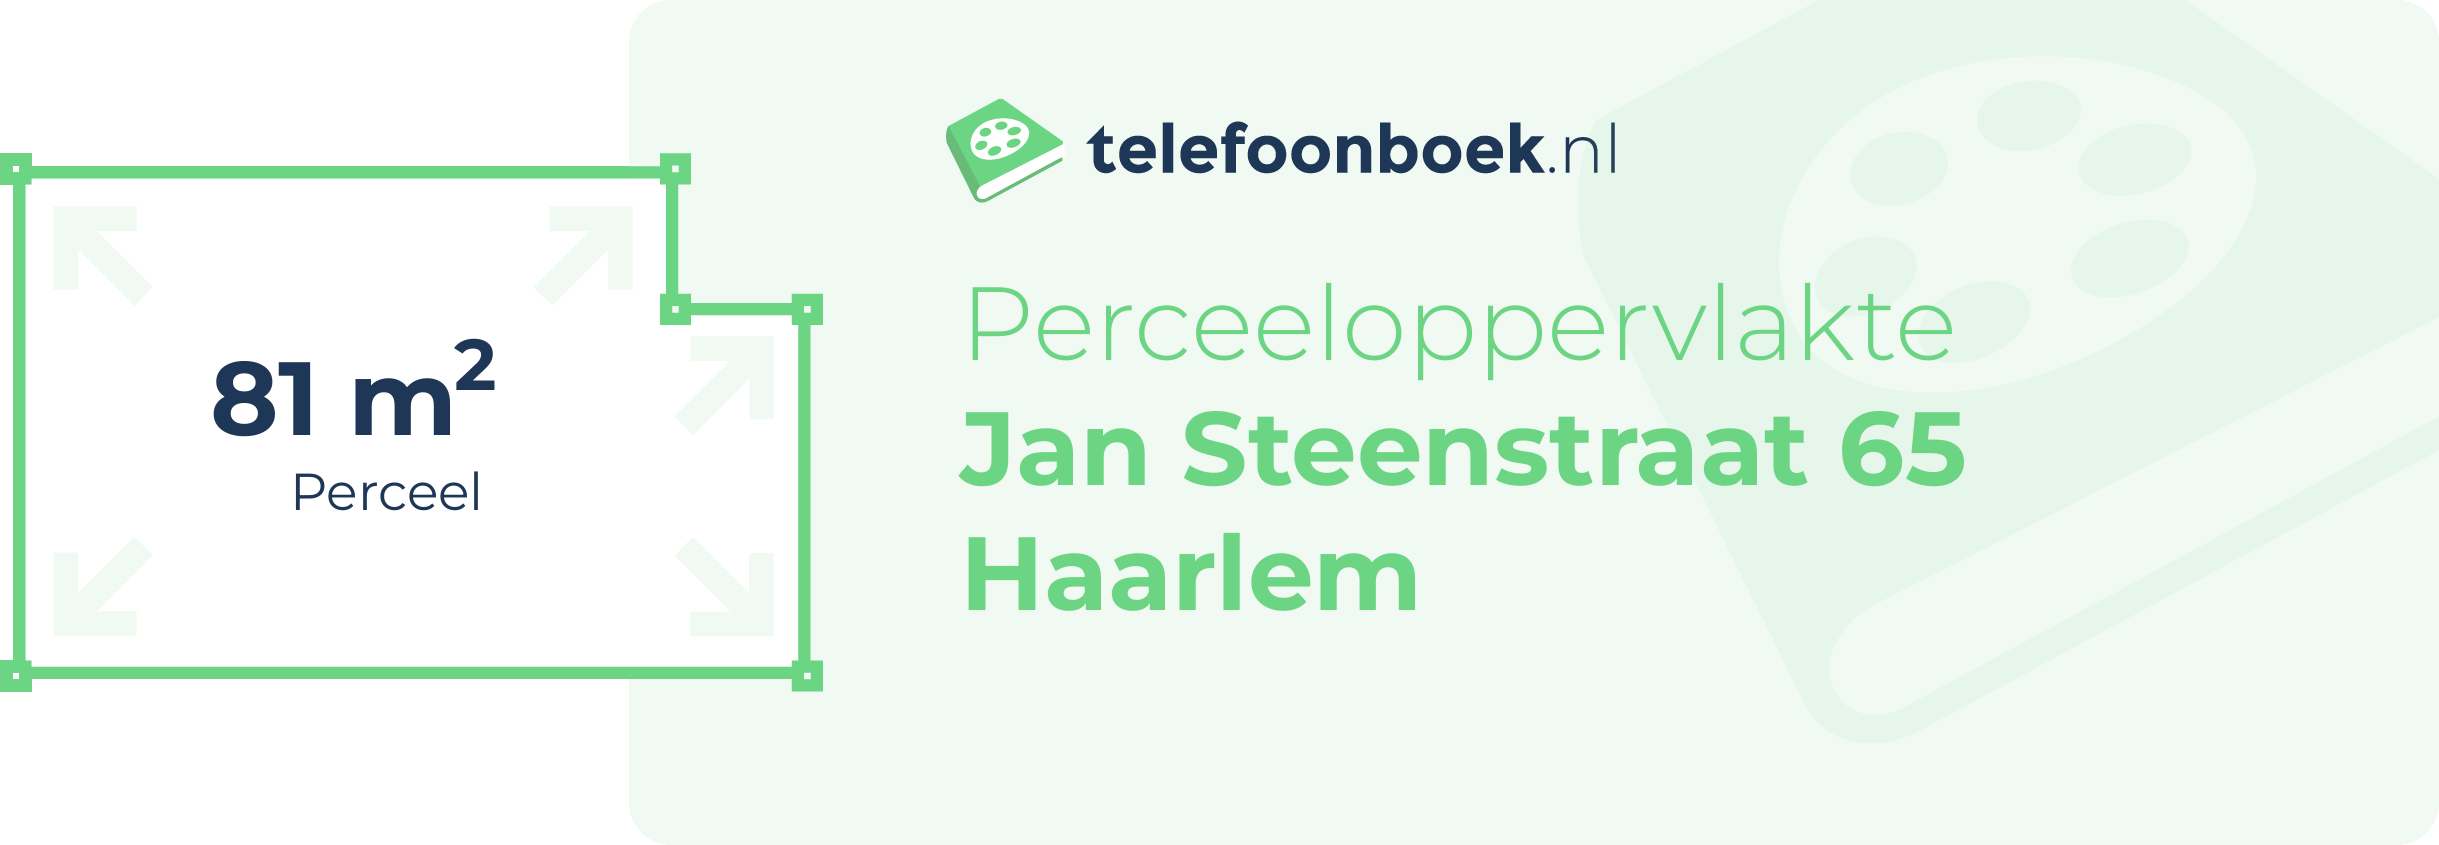 Perceeloppervlakte Jan Steenstraat 65 Haarlem